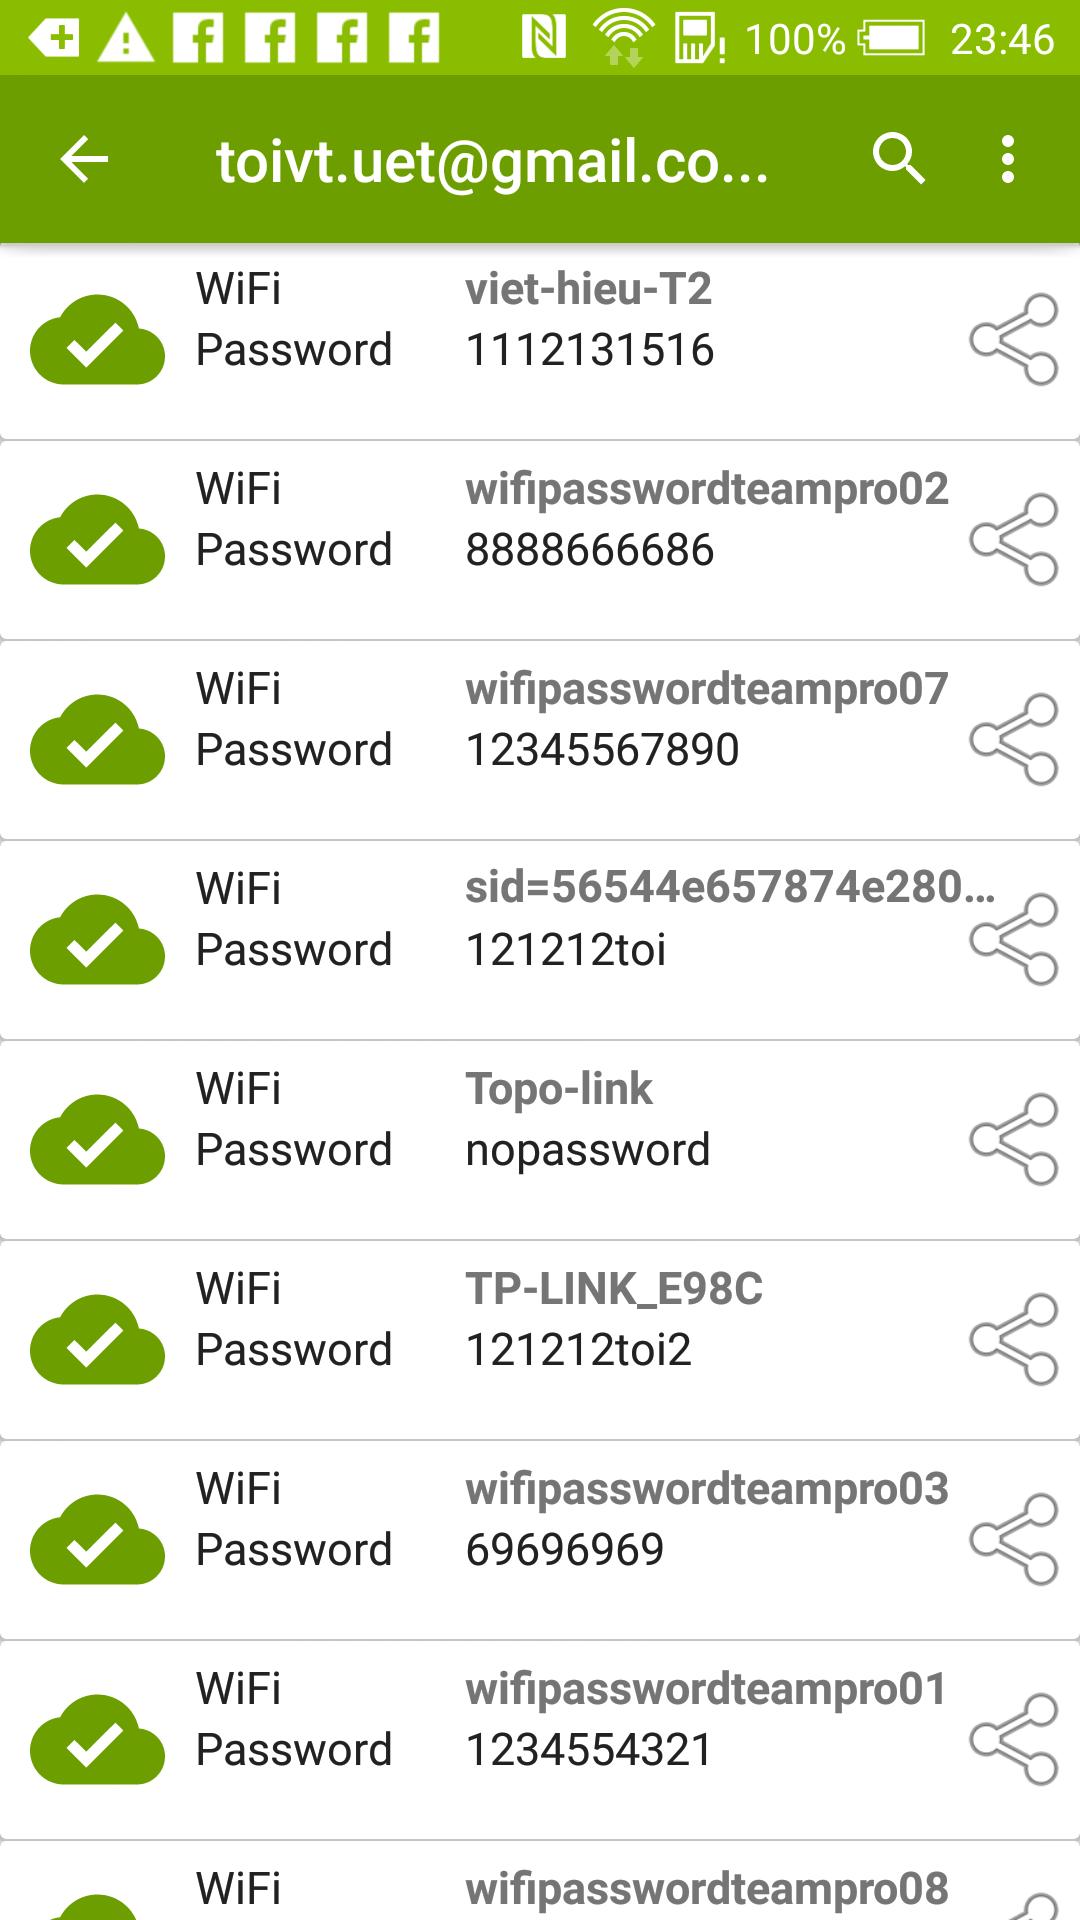 Mostrar Contrasena Wifi For Android Apk Download - como hackear cuenta de roblox sin saber la contraseña 2019